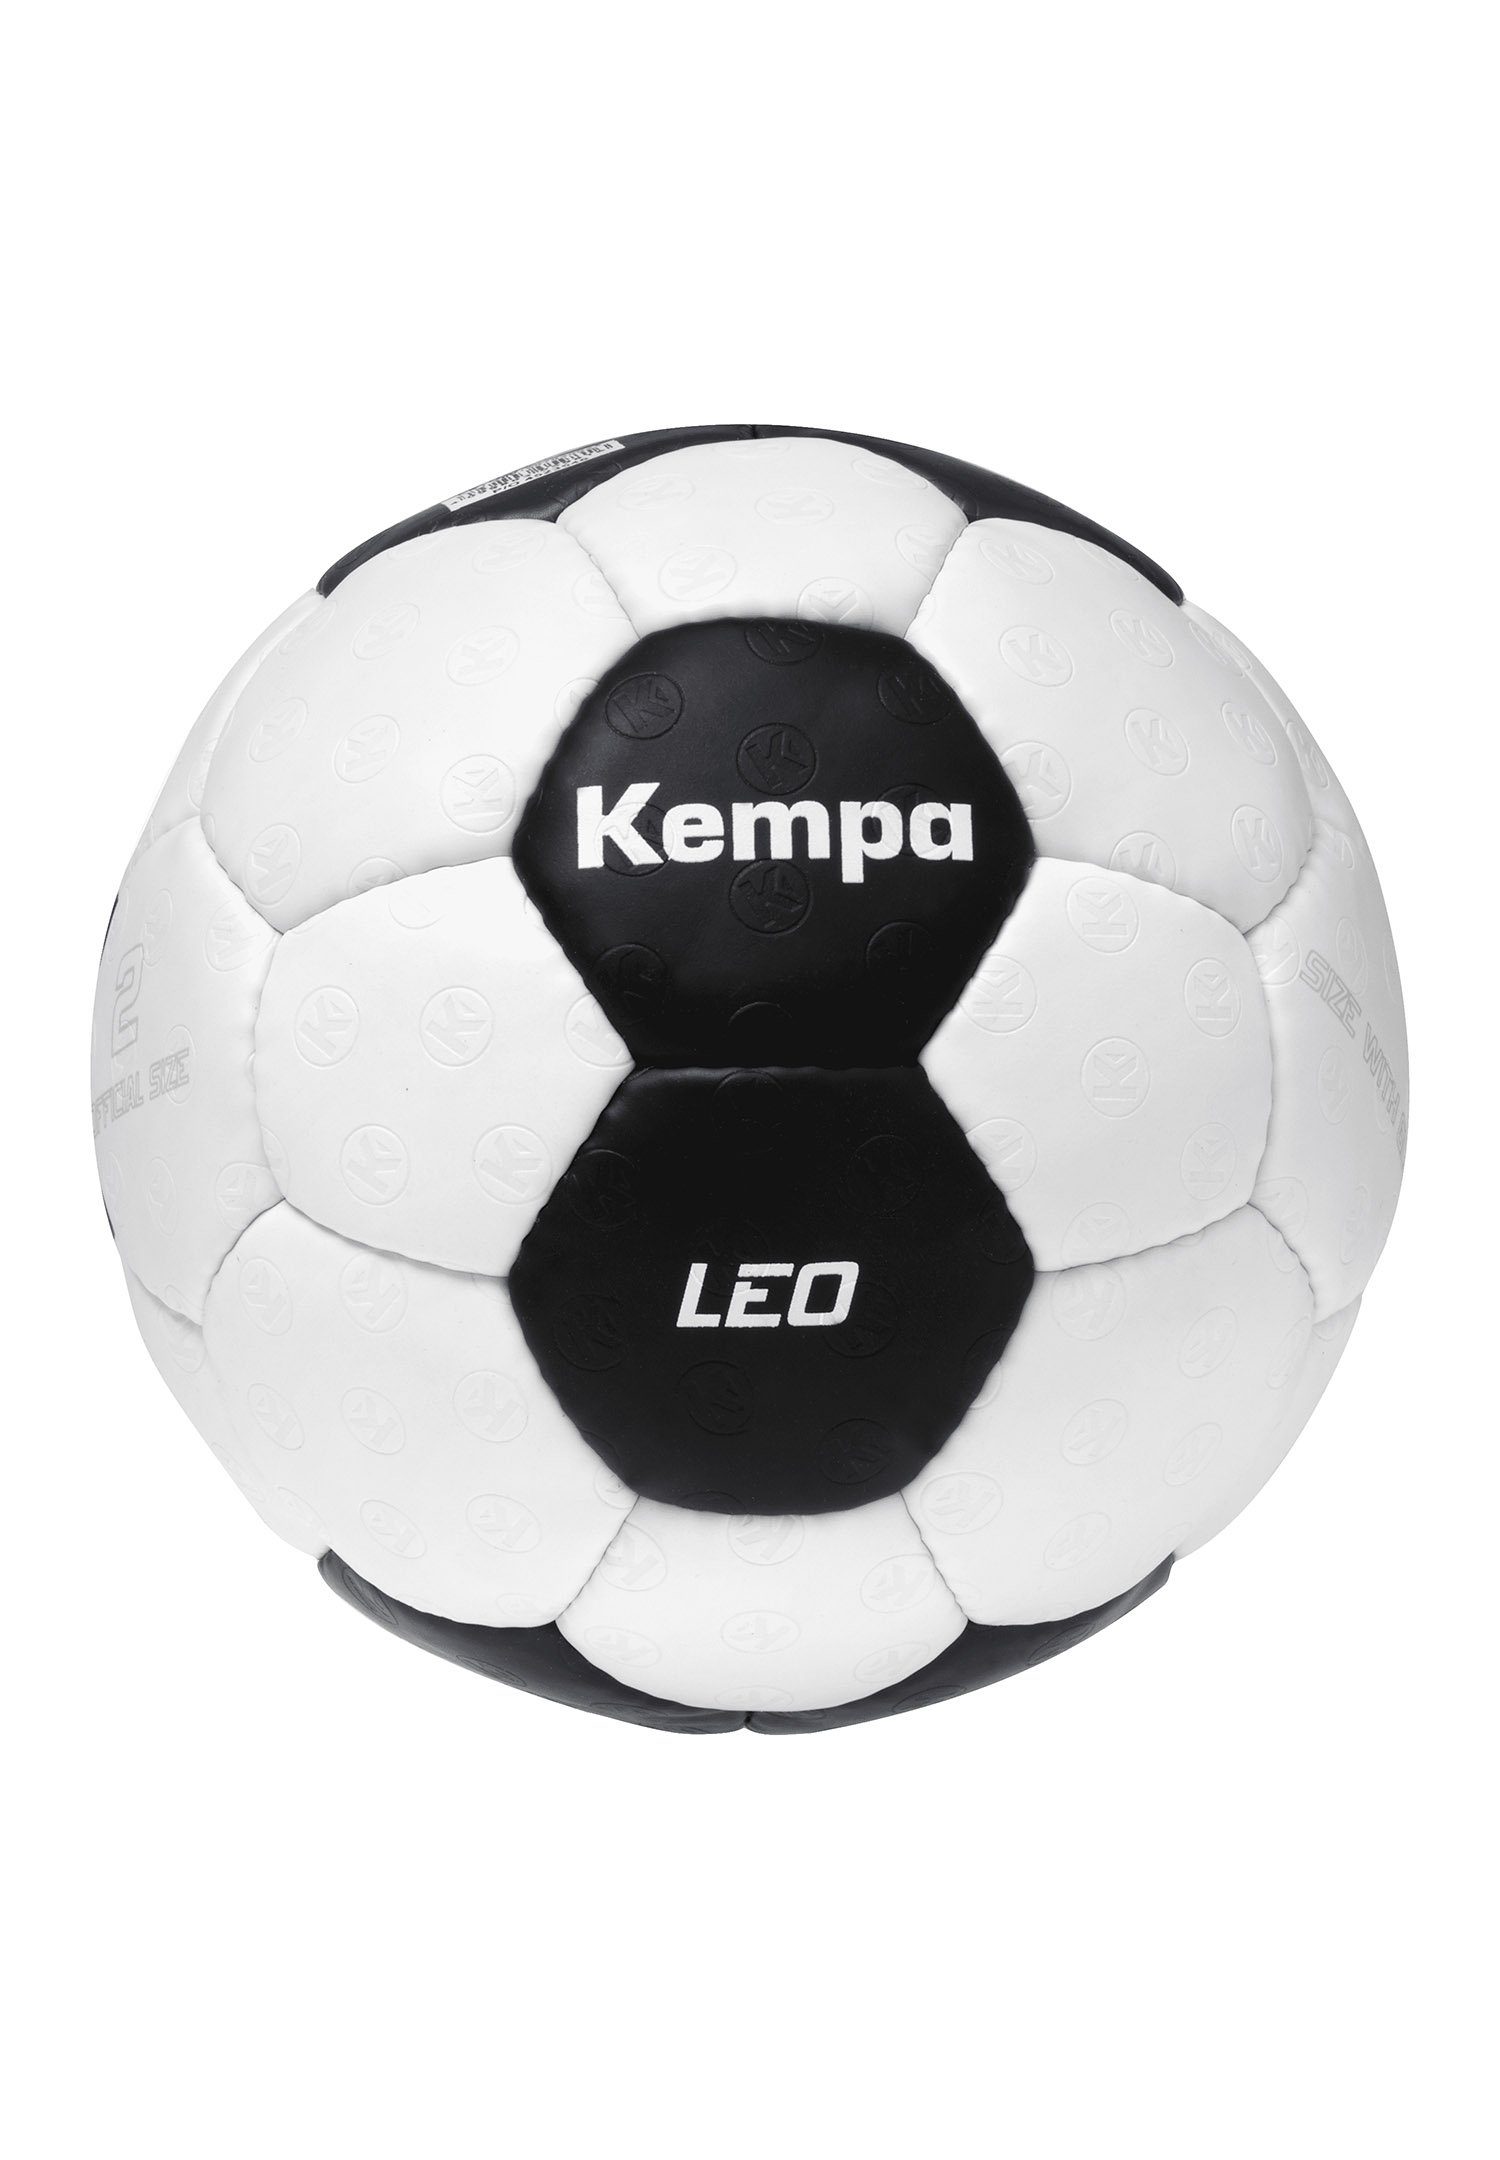 Leo Fußball Game Changer Kempa